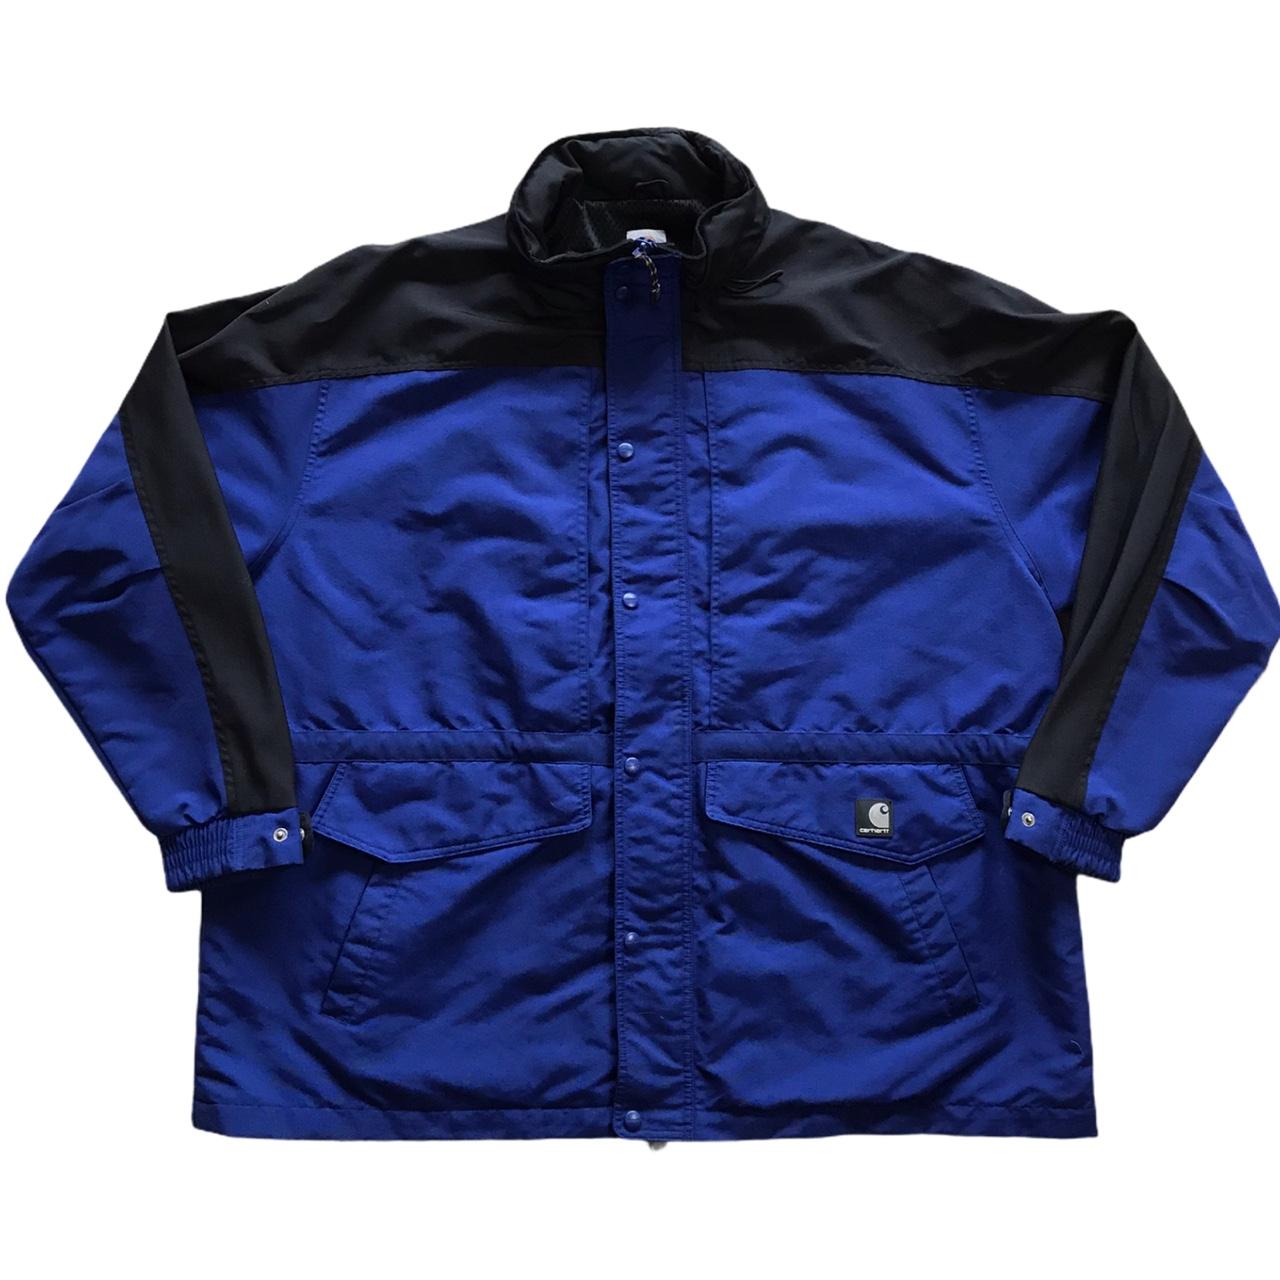 Carhartt Heavy Duty Nylon Rain Coat/Jacket.... - Depop